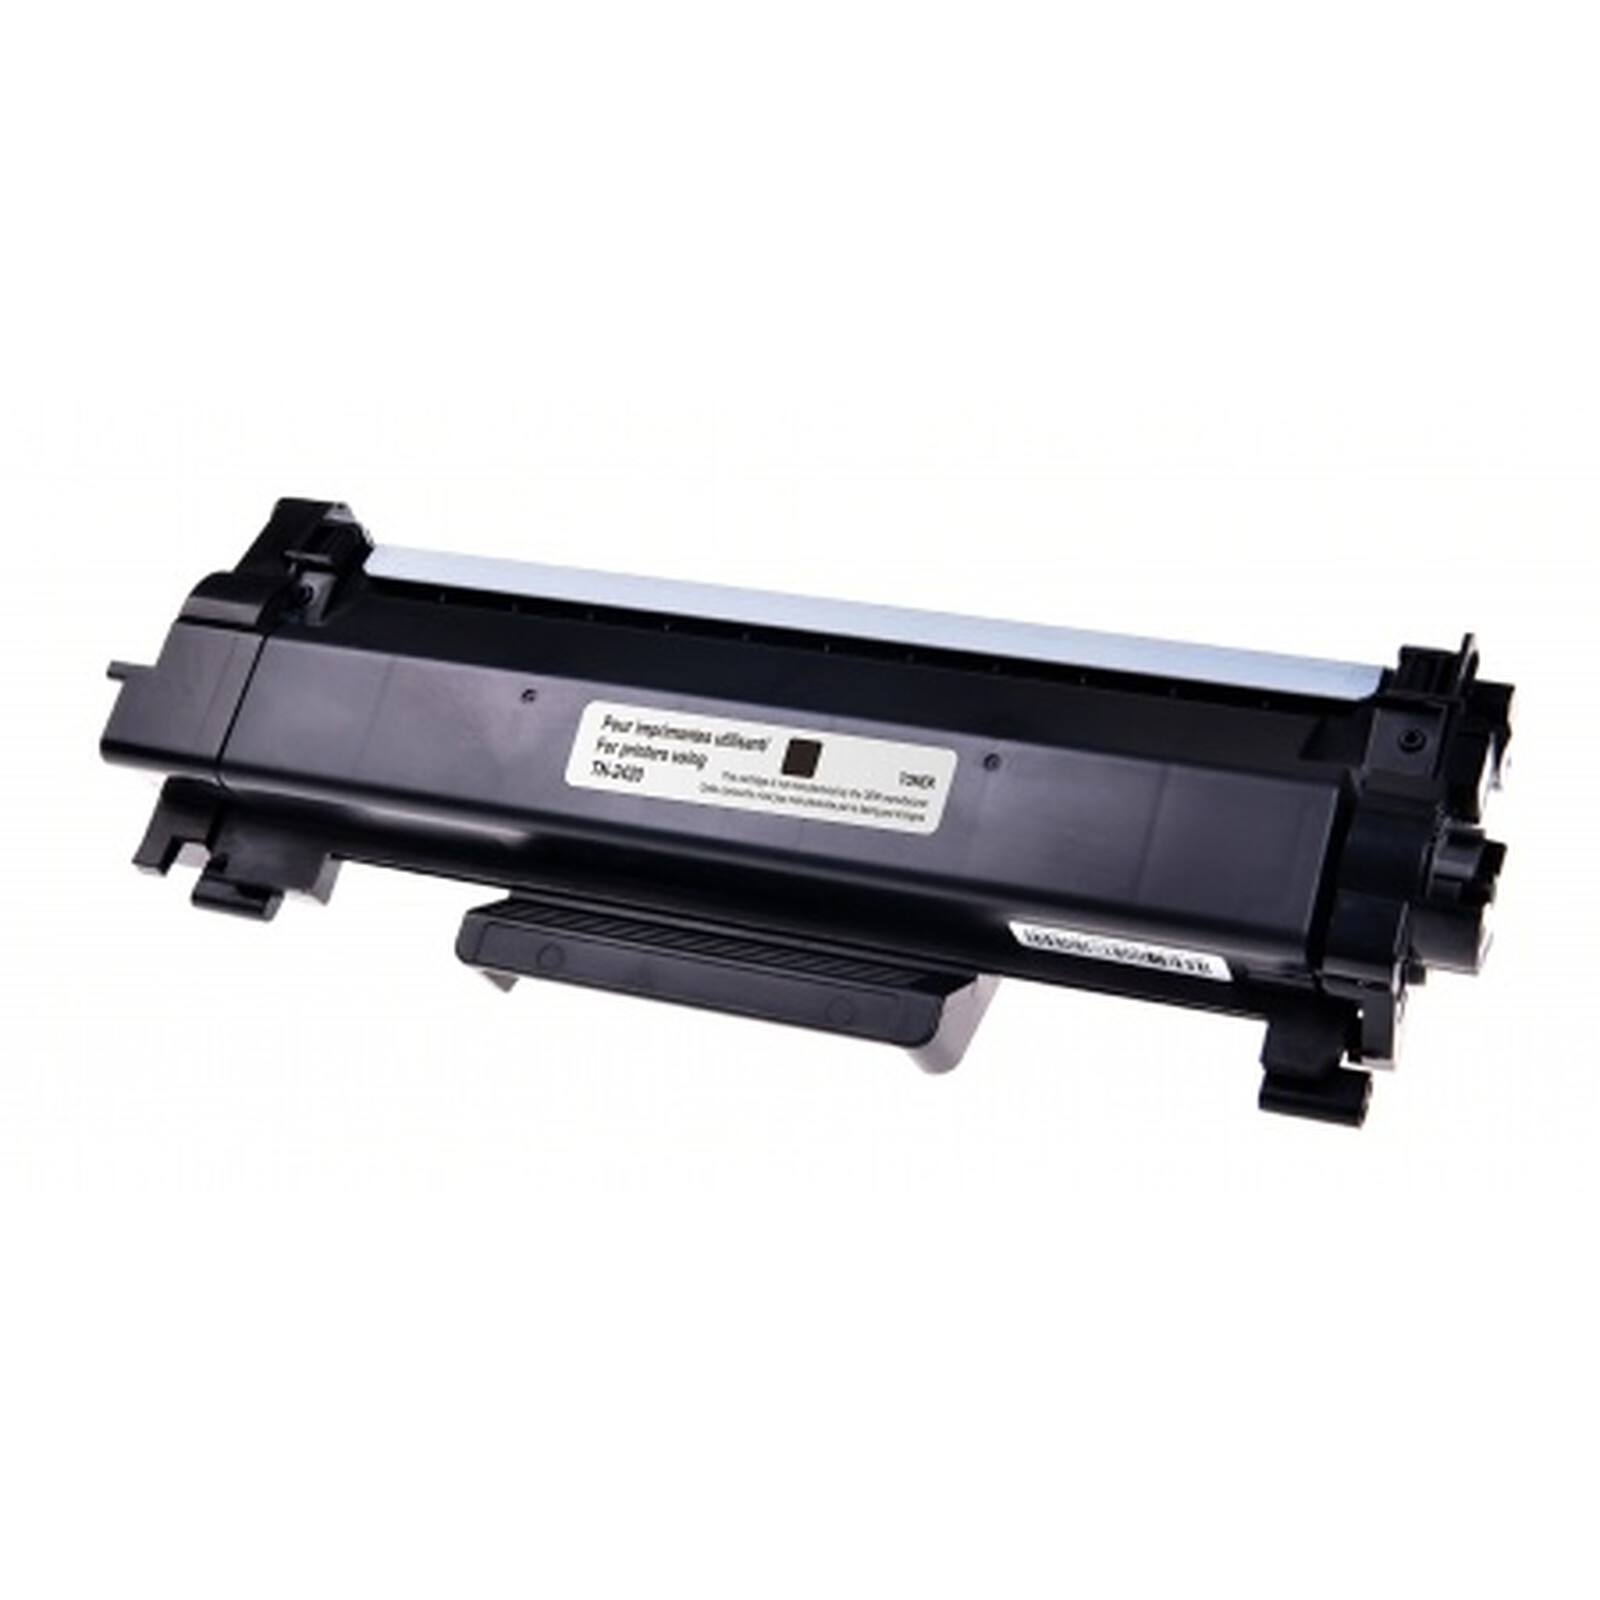 TN-2420 Toner noir pour imprimante BrotherDCP-L 2510 D, HL-L 2350 DW, MFC-L  2710 DW